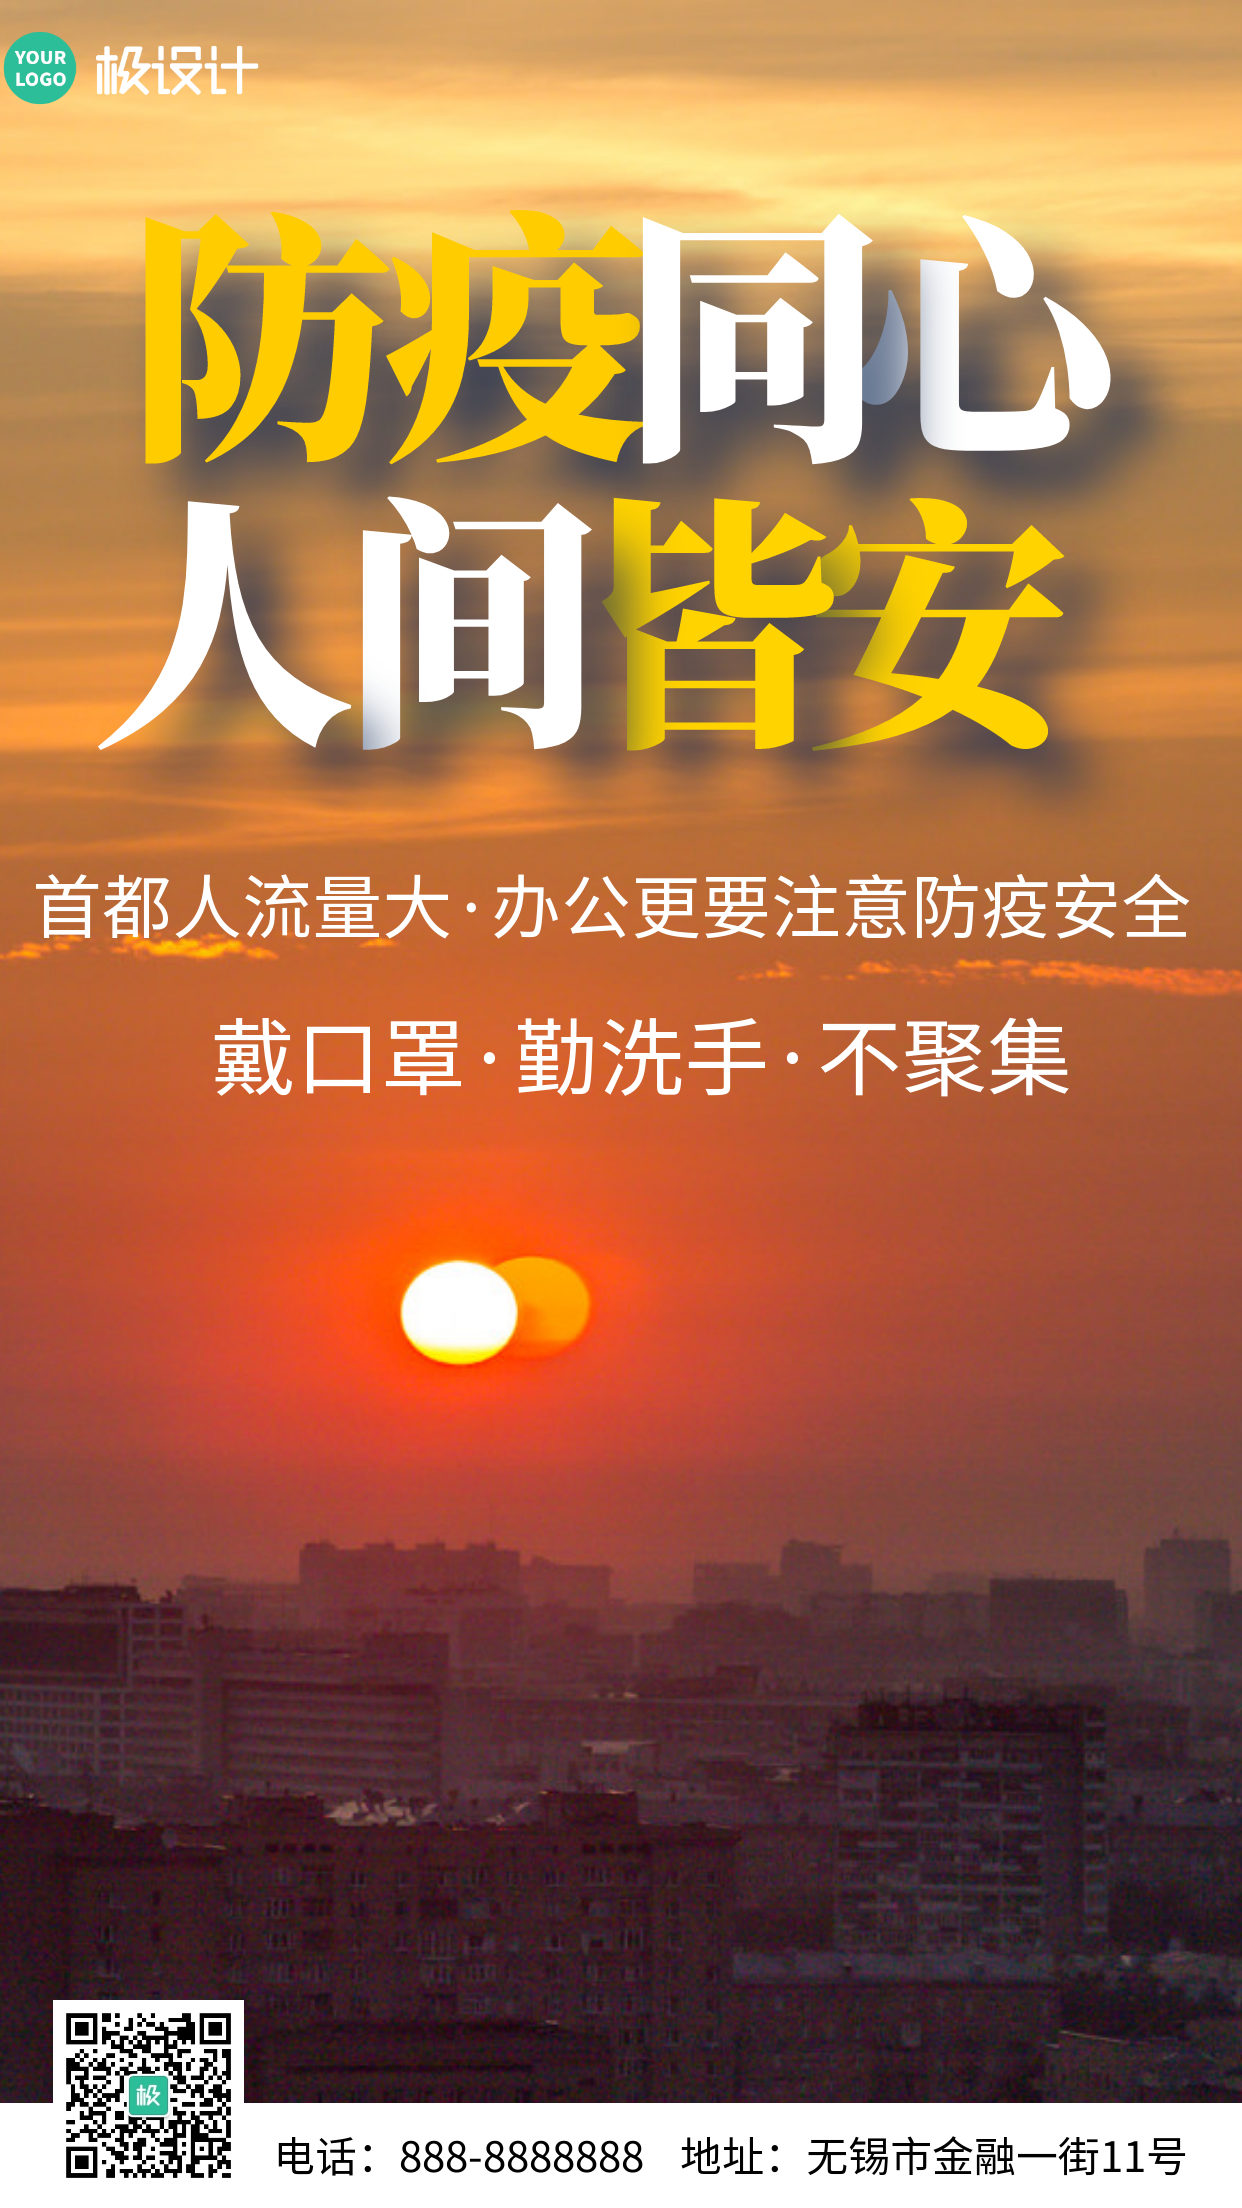 在京办公注意防疫公共安全提醒摄影图手机海报